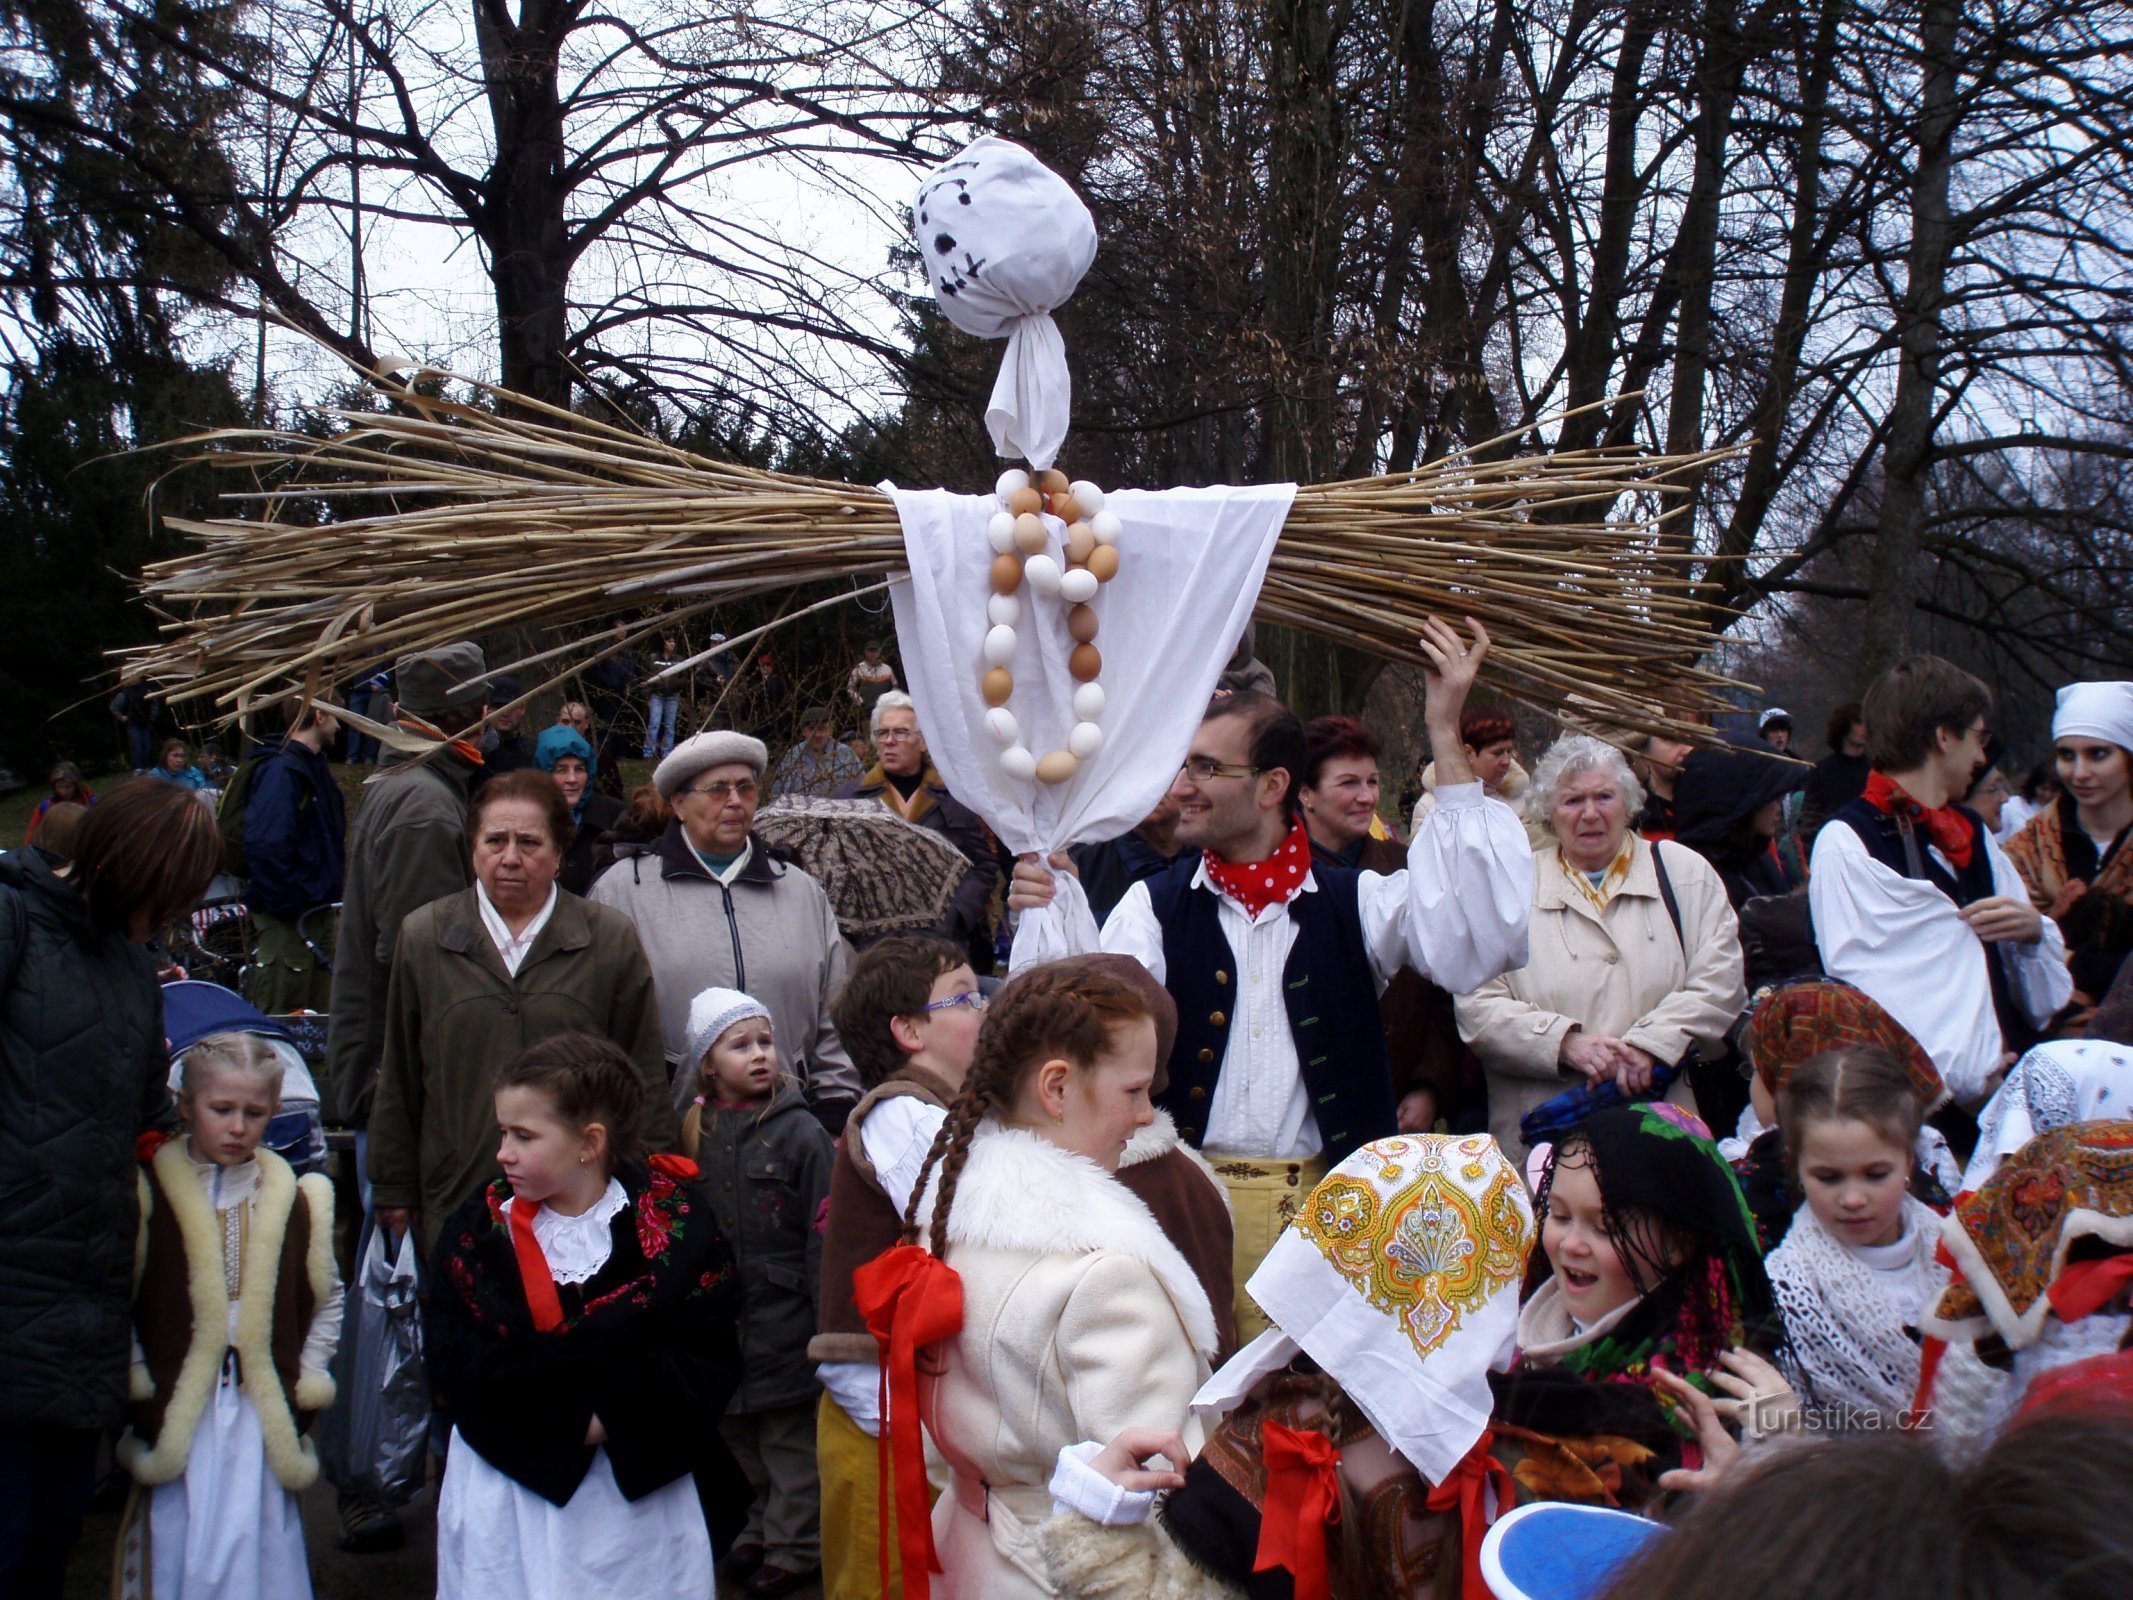 Esecuzione della Smrtholka da Hradec Králové (Hradec Králové, 29.3.2009/XNUMX/XNUMX)